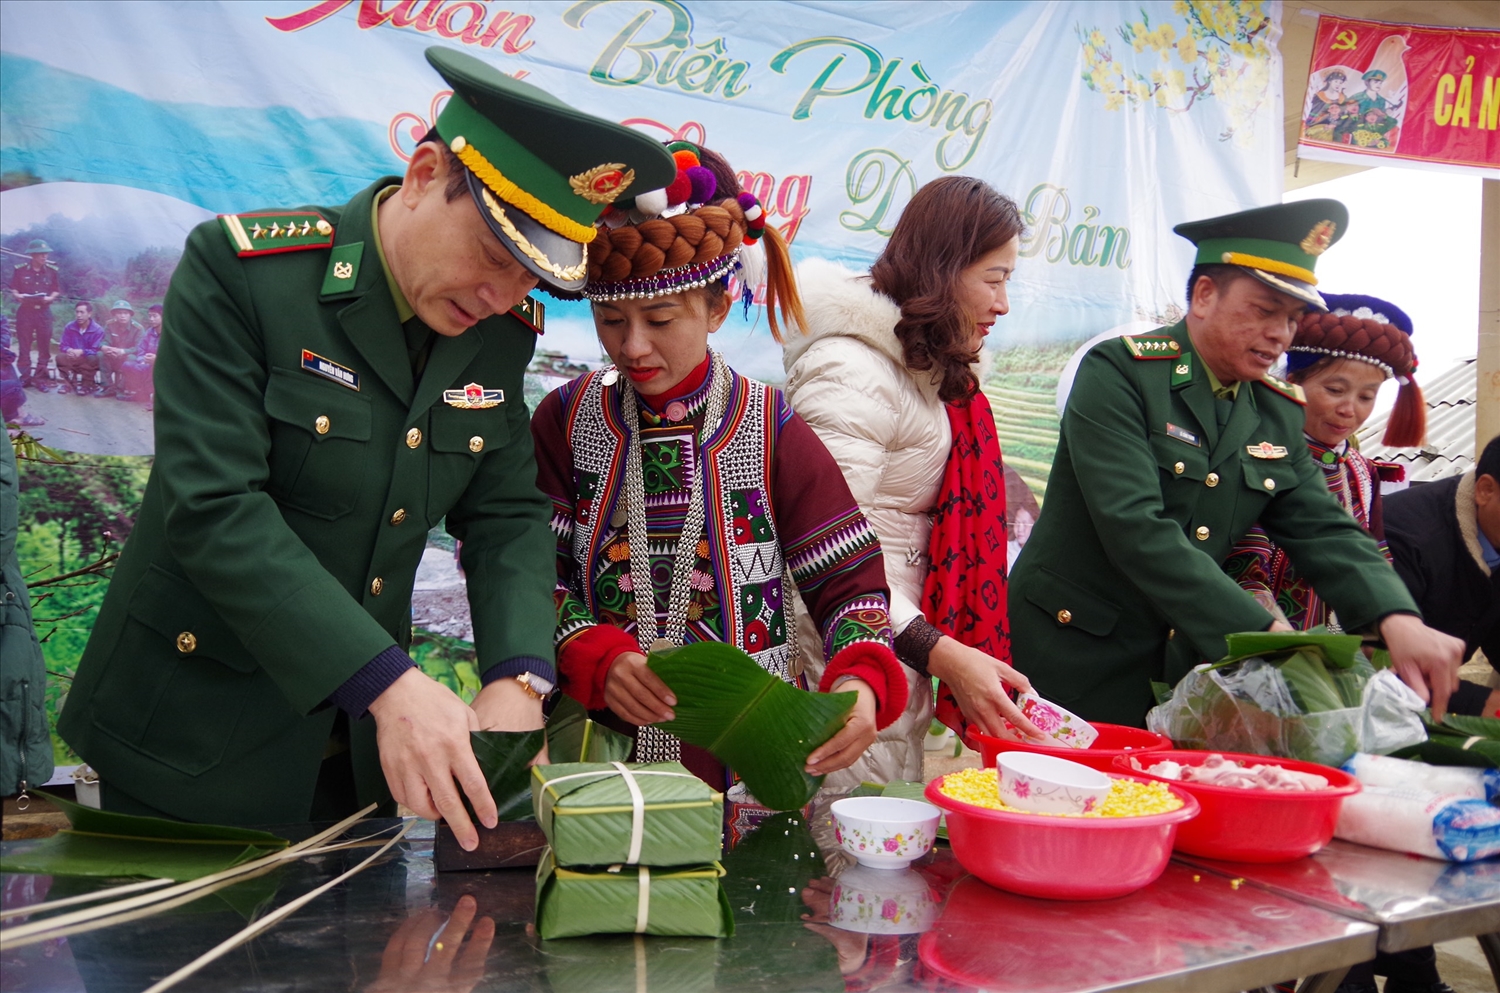 Lãnh đạo BĐBP tỉnh Lai Châu, cán bộ huyện Phong Thổ tổ chức gói bánh chưng cùng bà con